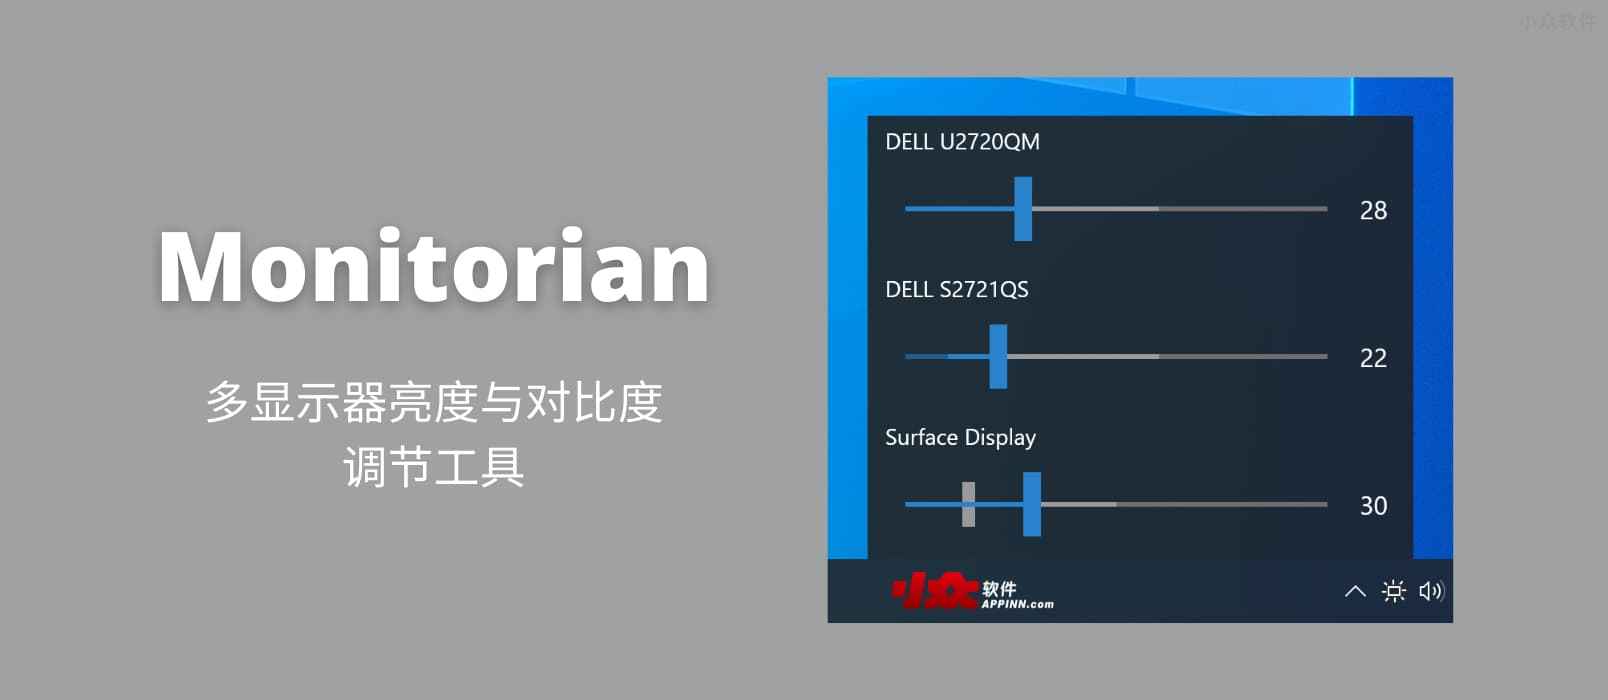 Monitorian - 多显示器亮度与对比度调节工具[Windows]